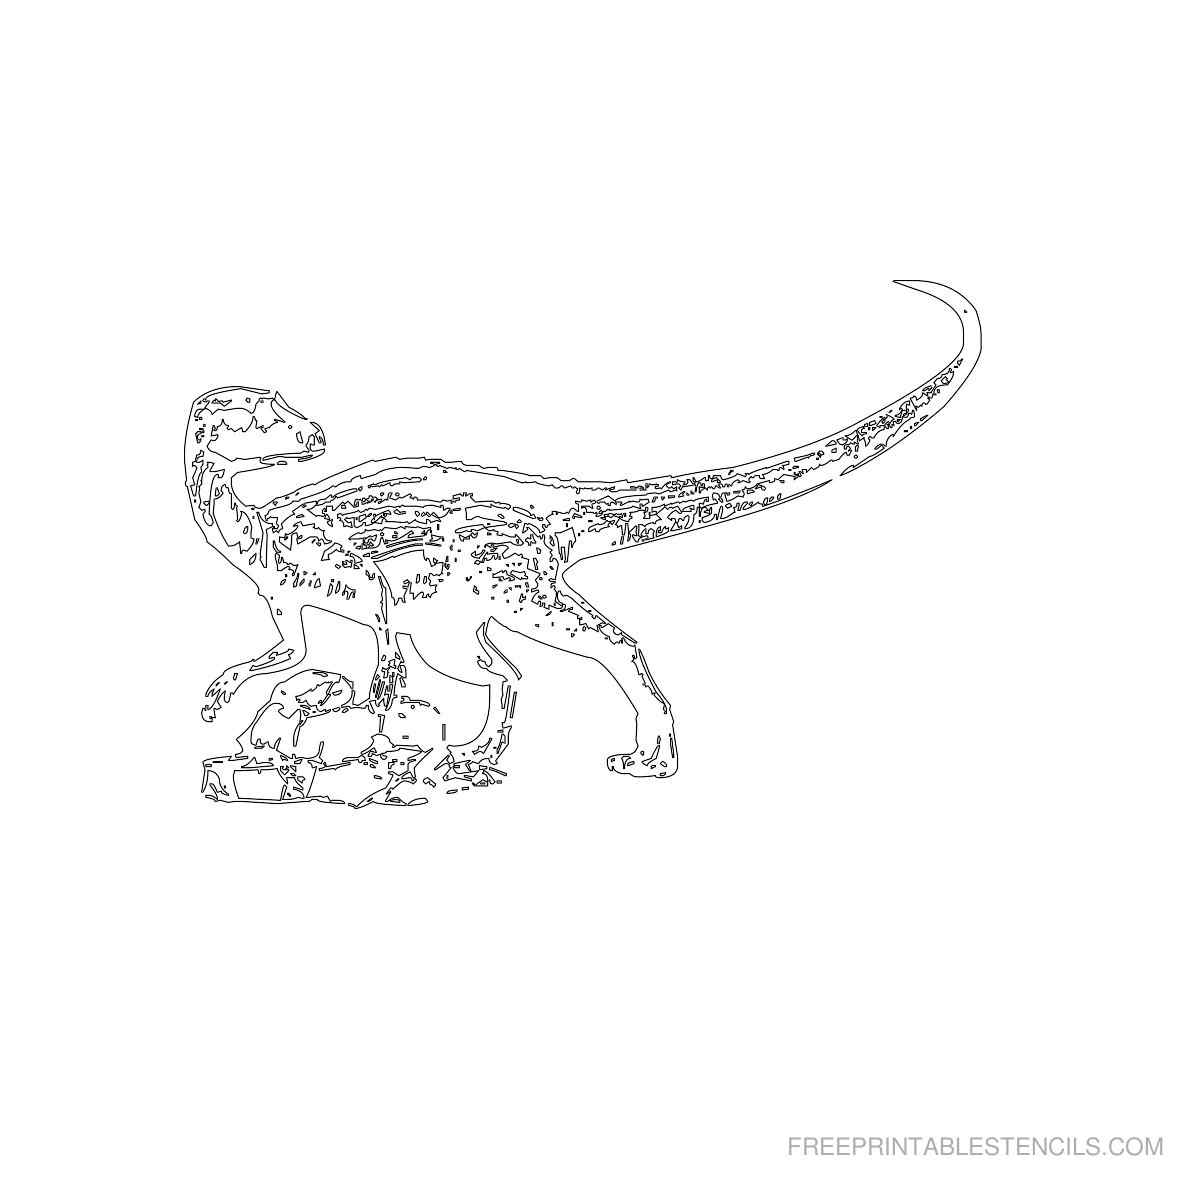 шаблон динозавра для вырезания из бумаги распечатать для детей 9